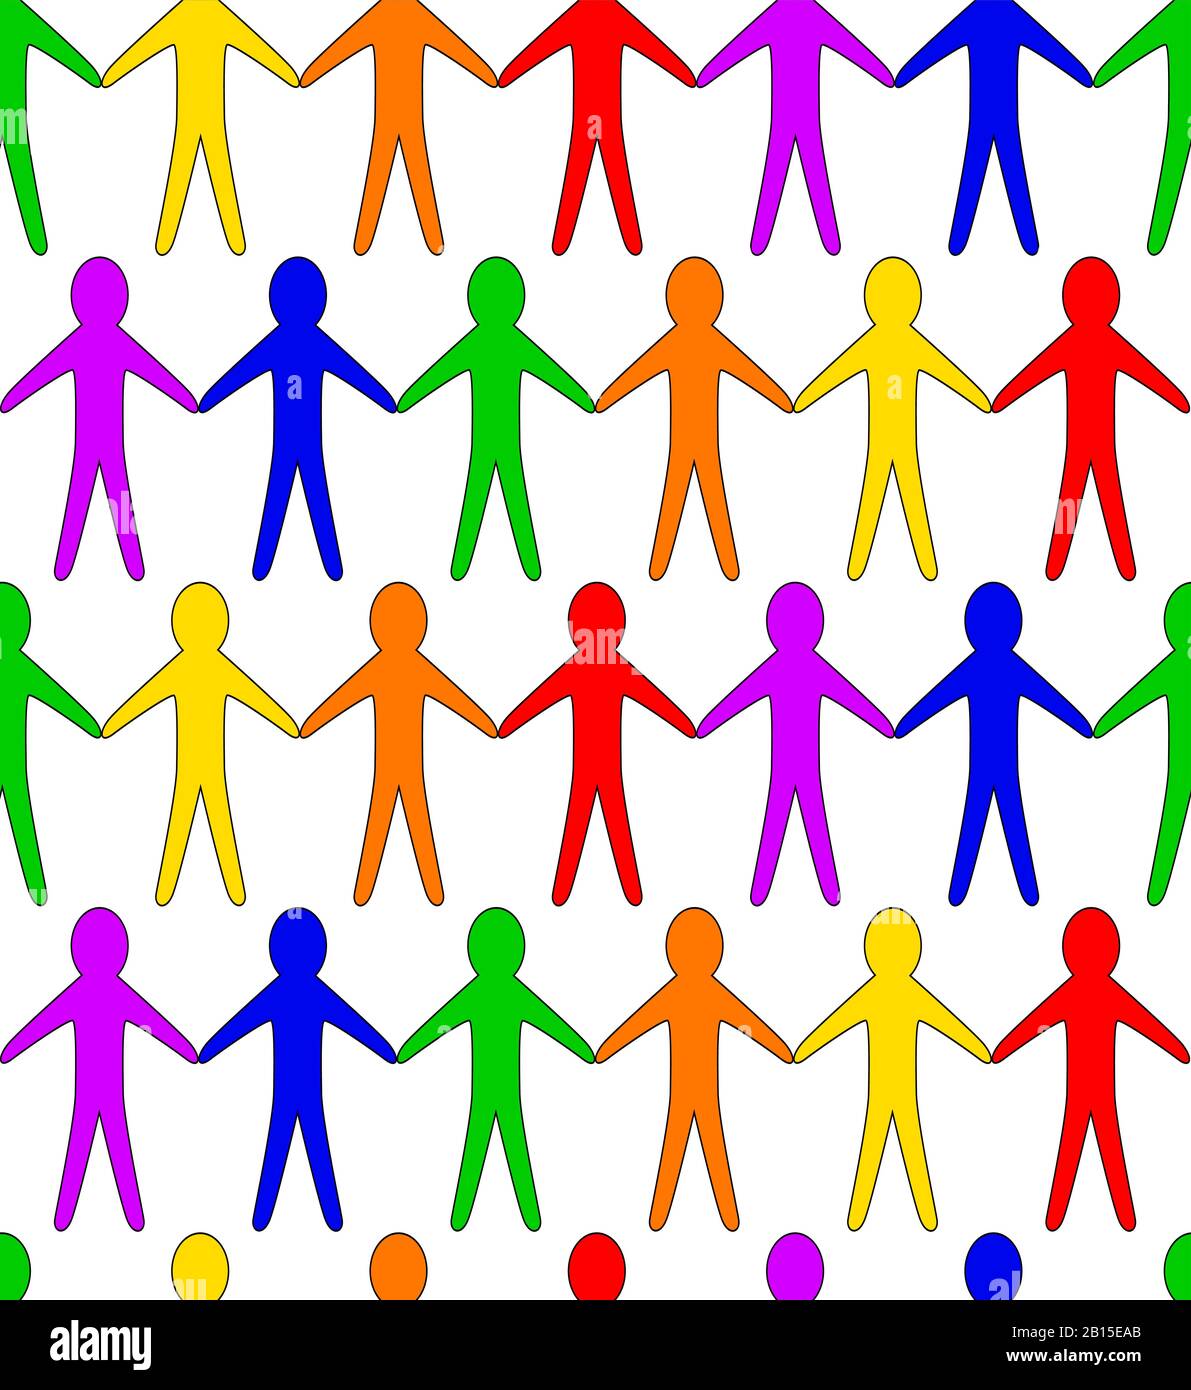 Une collection de personnes de découpe de papier tenant les mains faites des couleurs arc-en-ciel LGBT comme un modèle sans couture Illustration de Vecteur